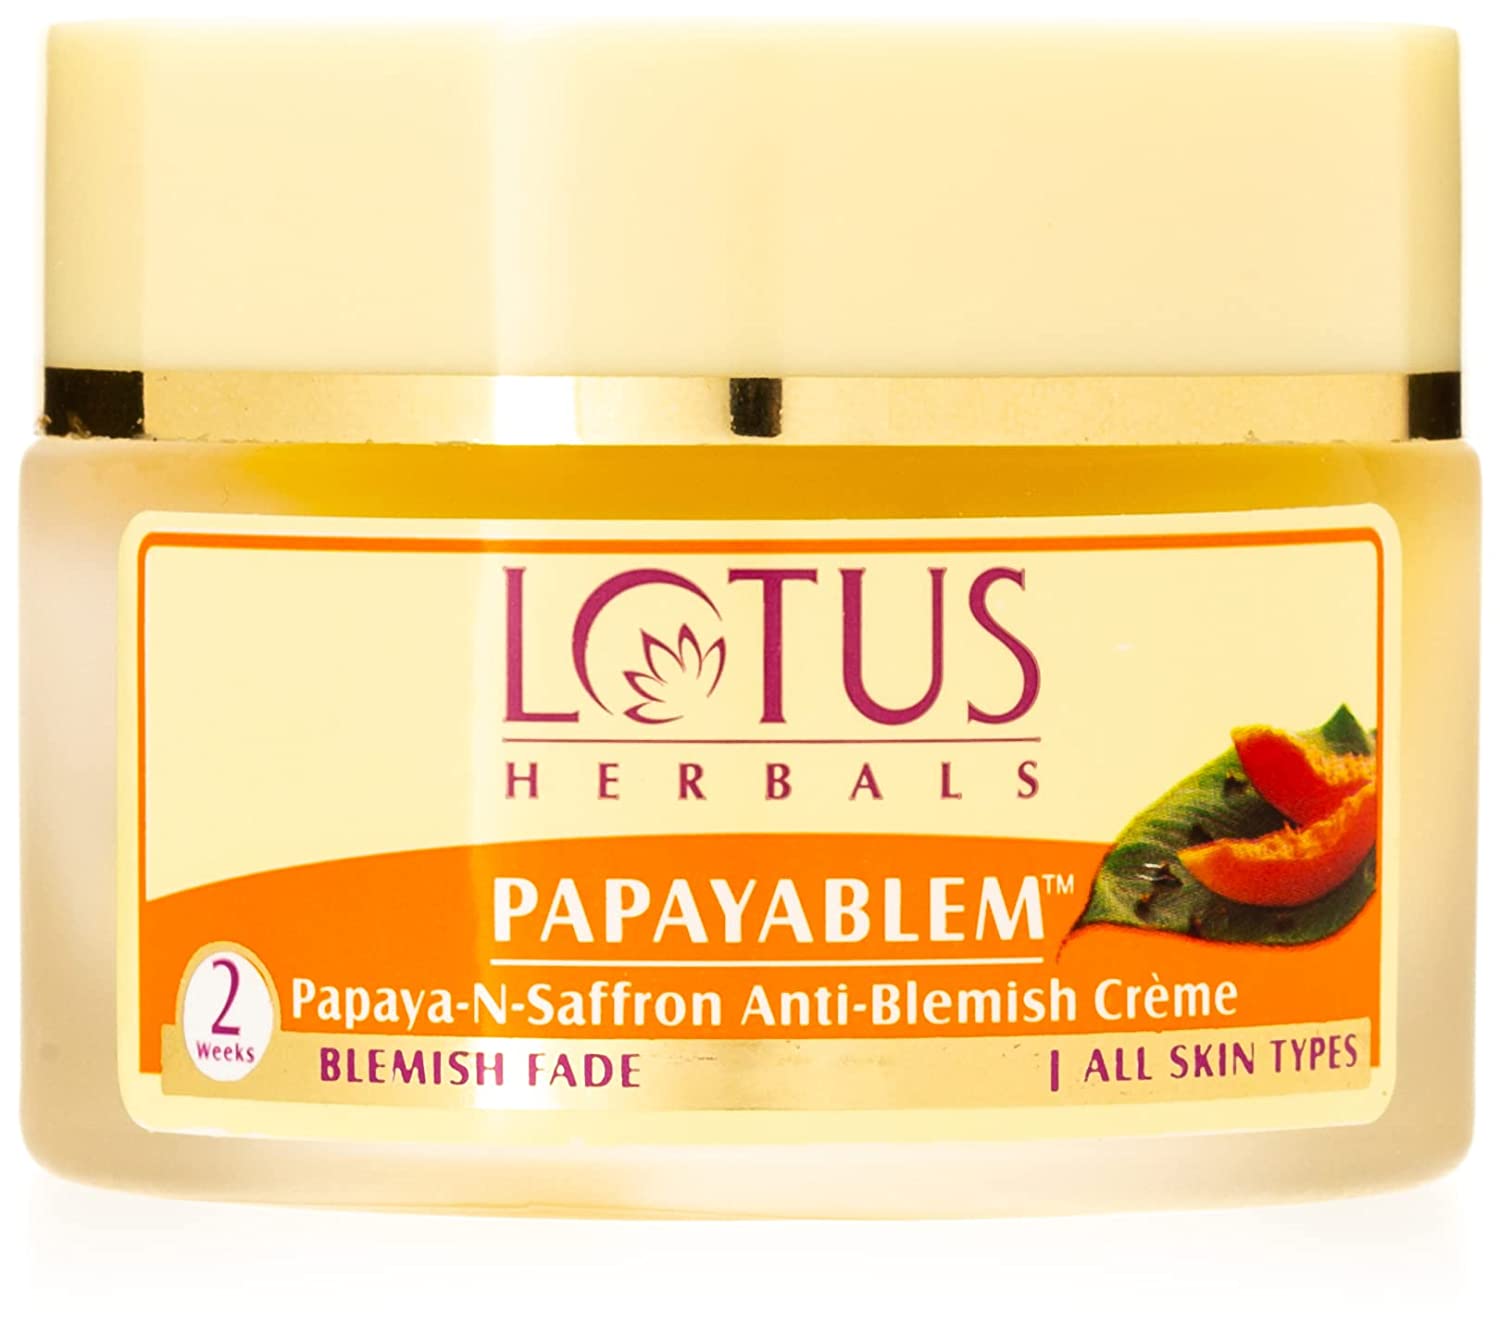 Lotus Herbals Papayablem Papaya-N-Saffron Anti-Blemish Cream (50 g) Lotus Herbals